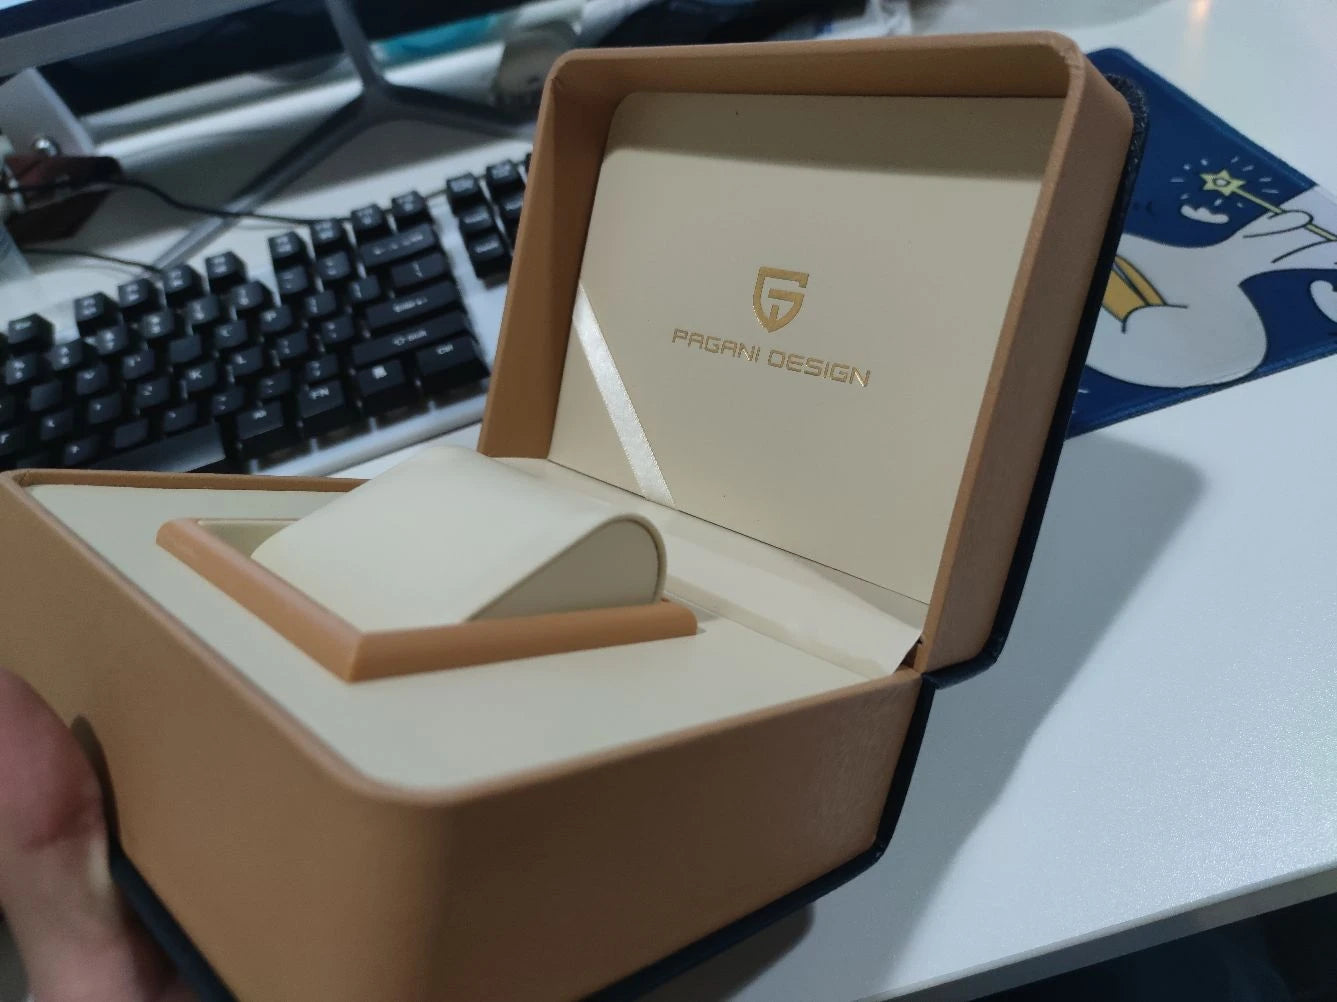 Pagani Design Prestige Gift Box